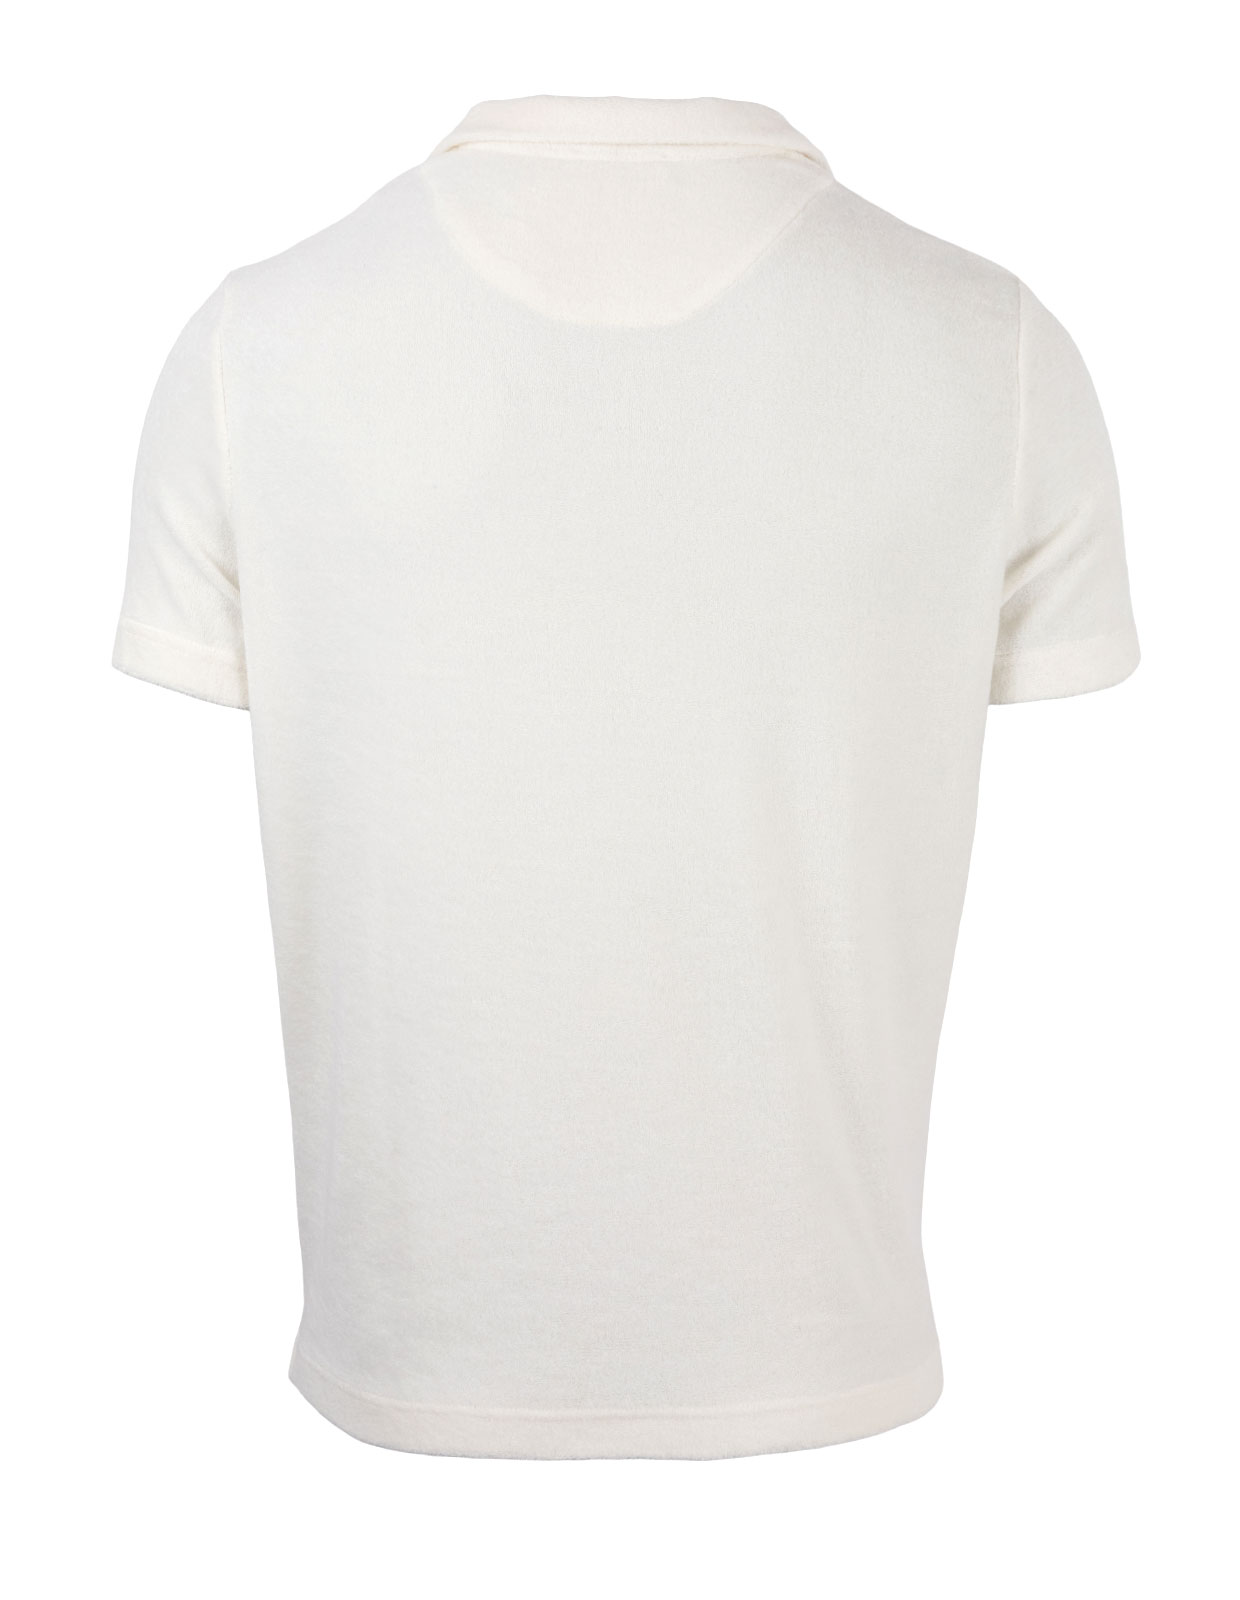 Dennis Terry Polo Shirt White